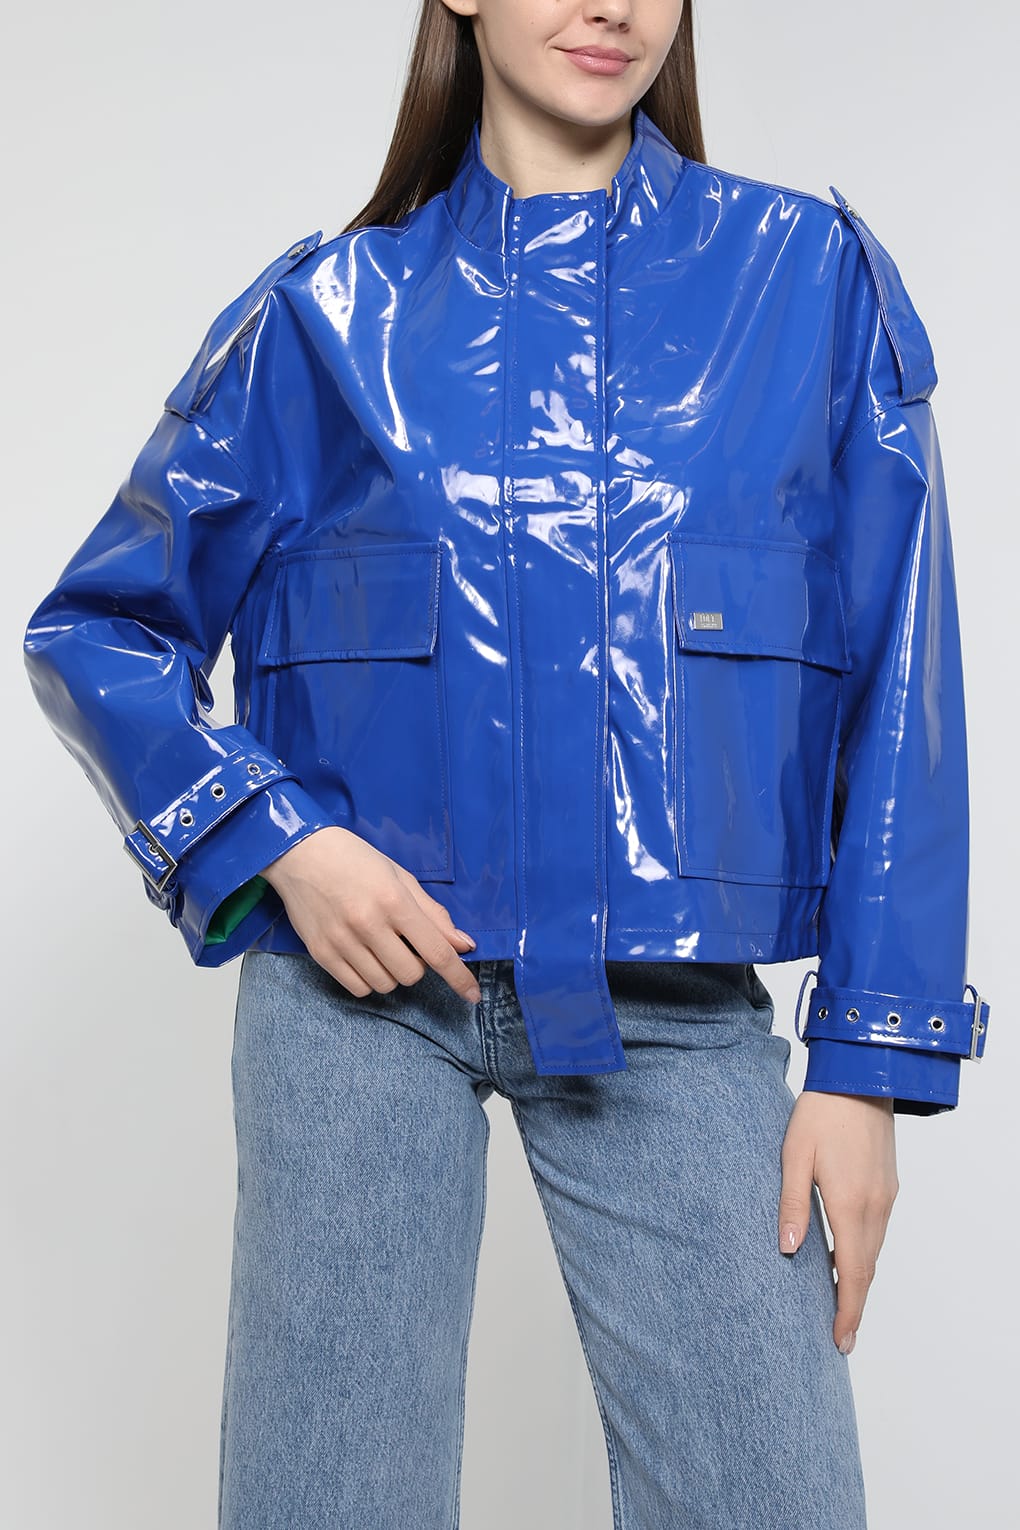 Кожаная куртка женская Loft LF2032892 голубая M